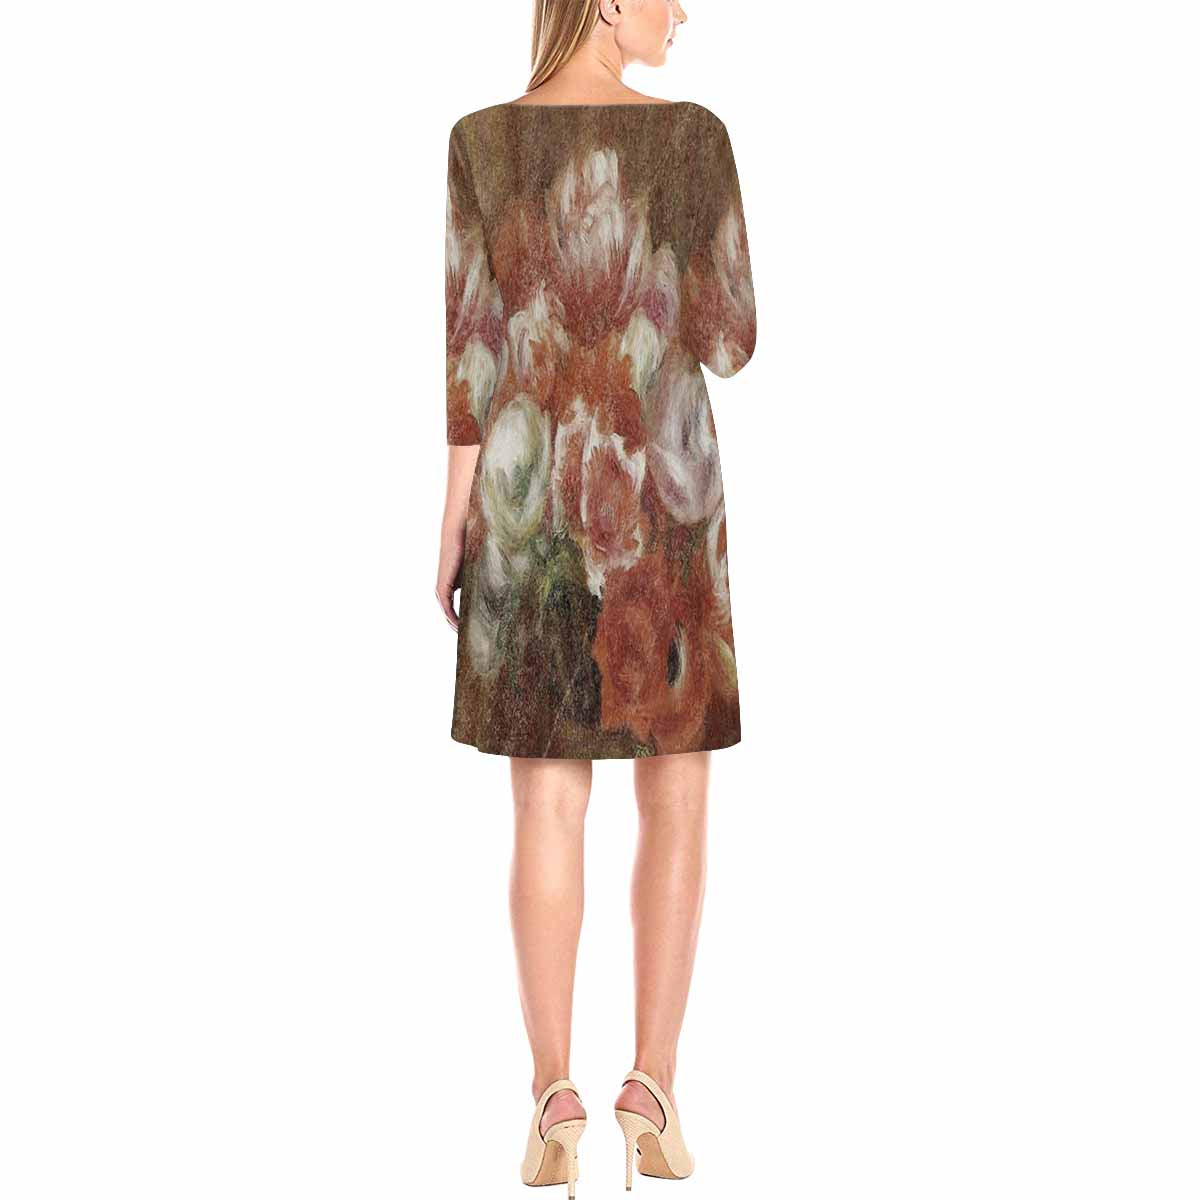 Vintage floral loose dress, model D29532 Design 15